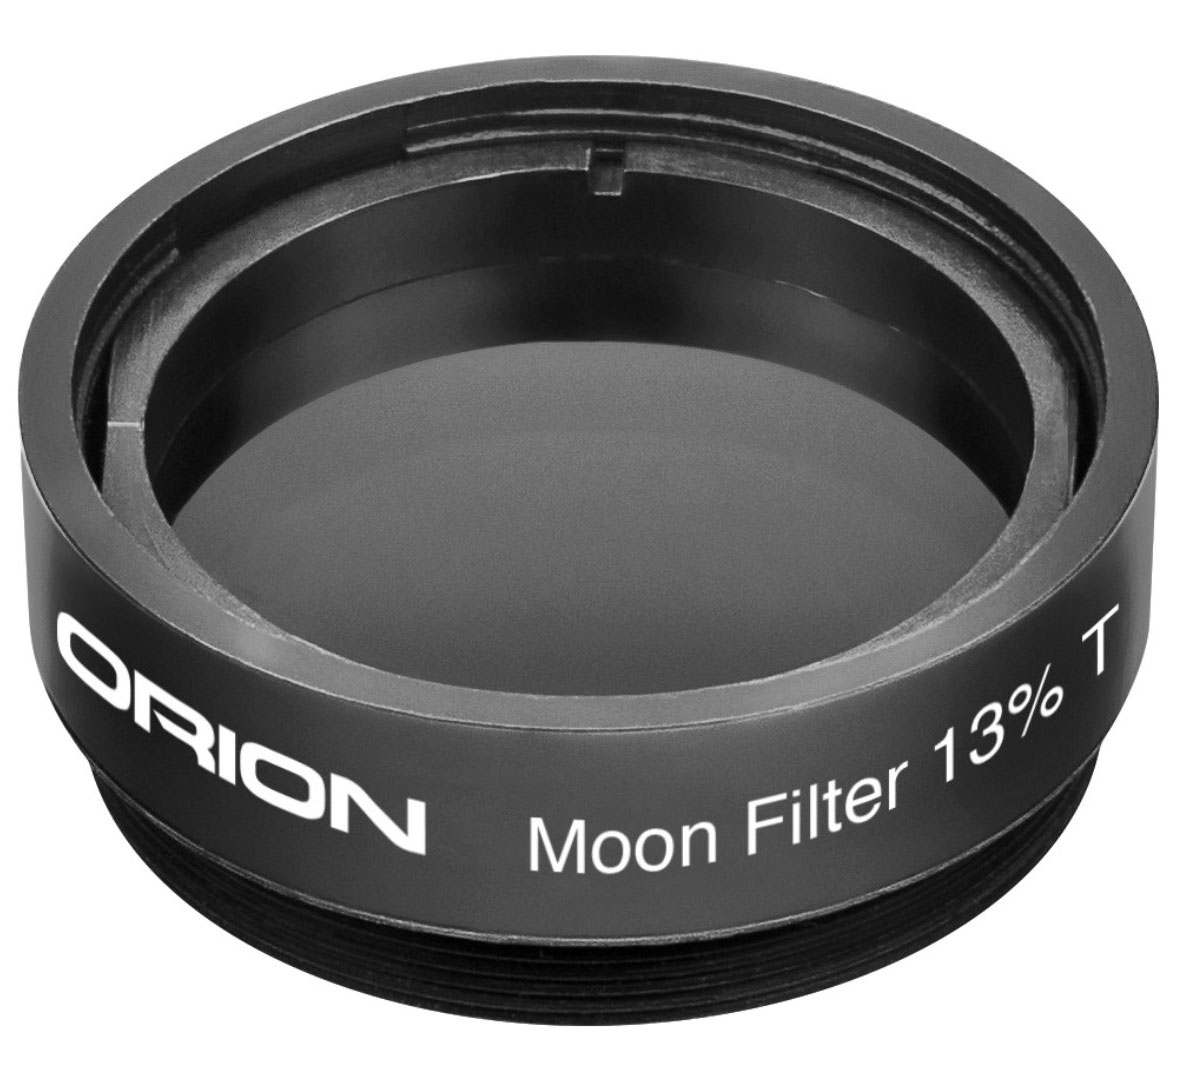 Лунный фильтр Orion, 13%, 1,25"